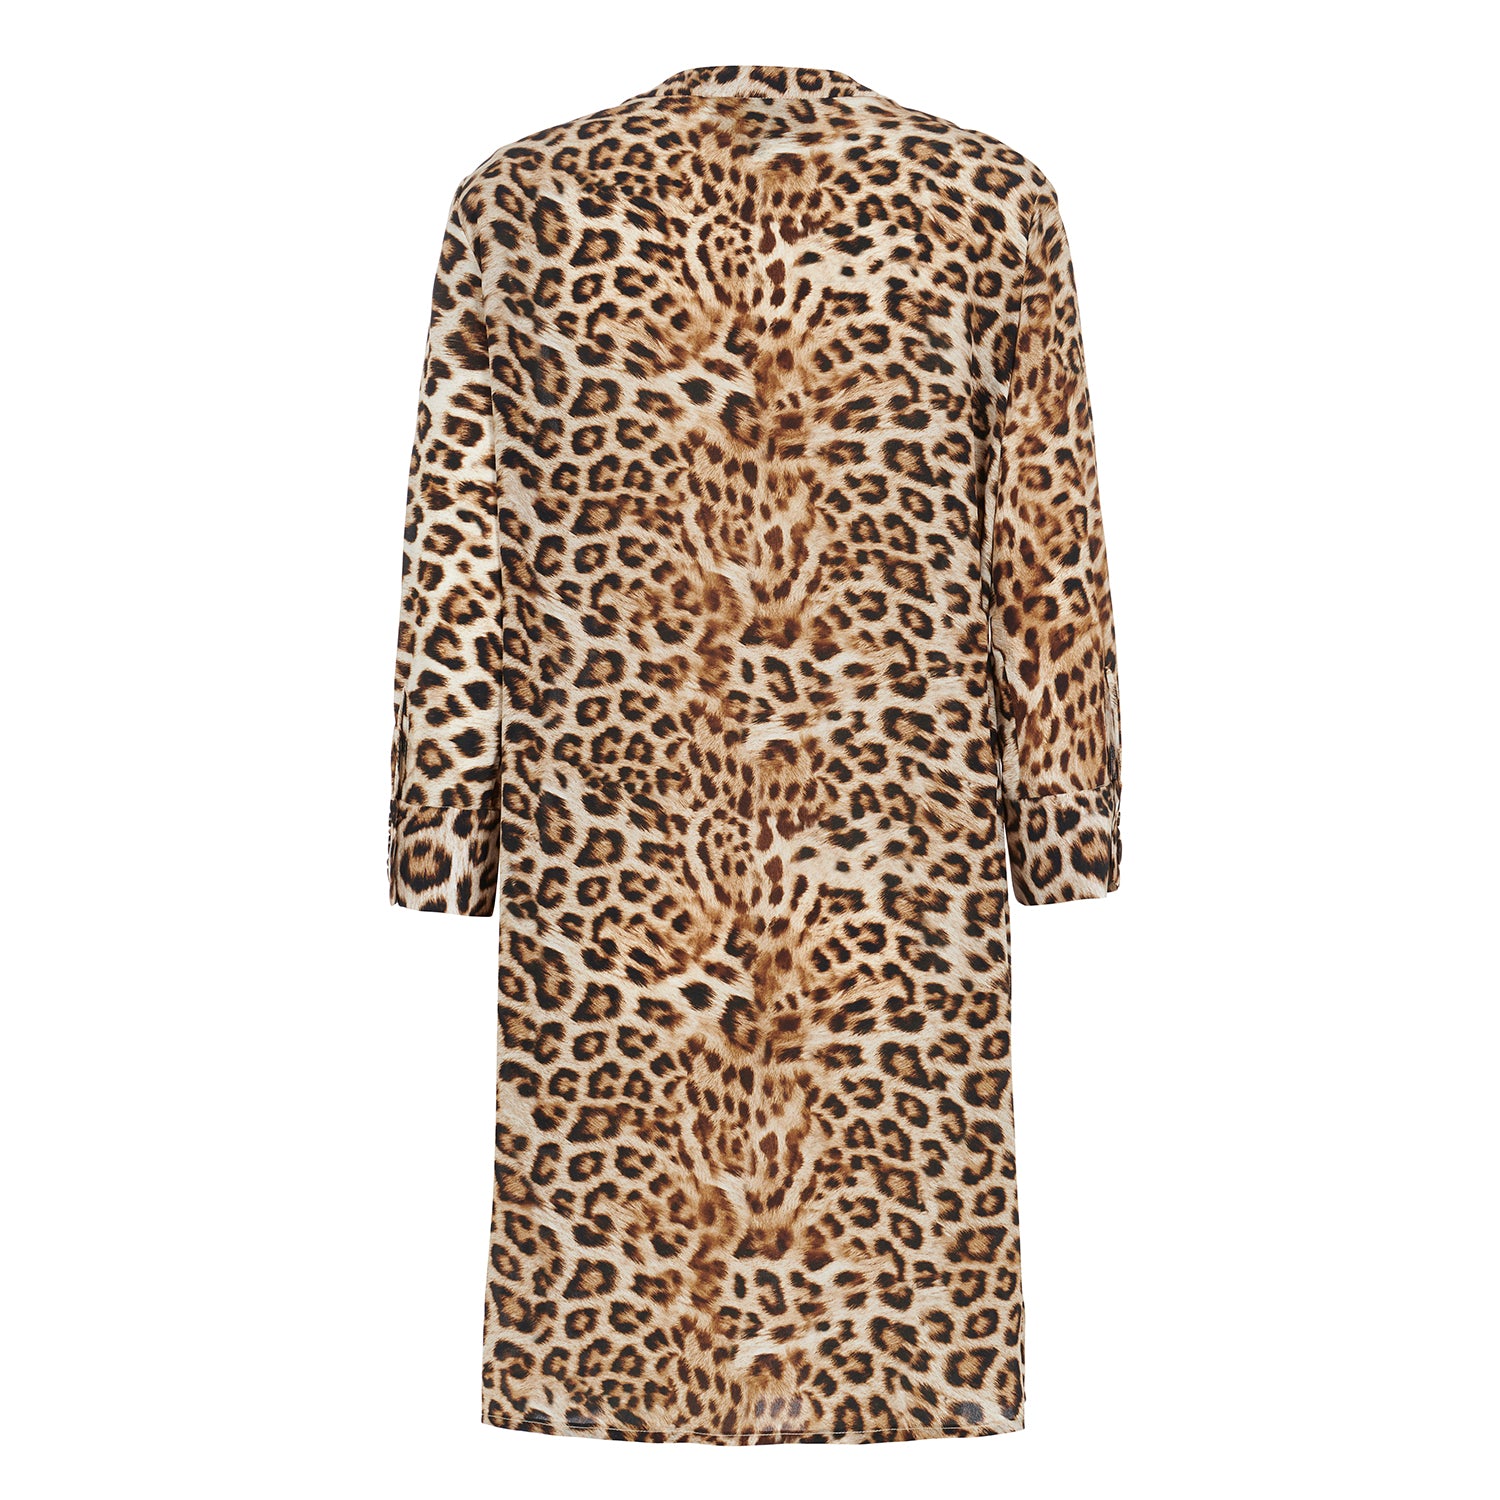 Silk Shirt Dress in Leopard.